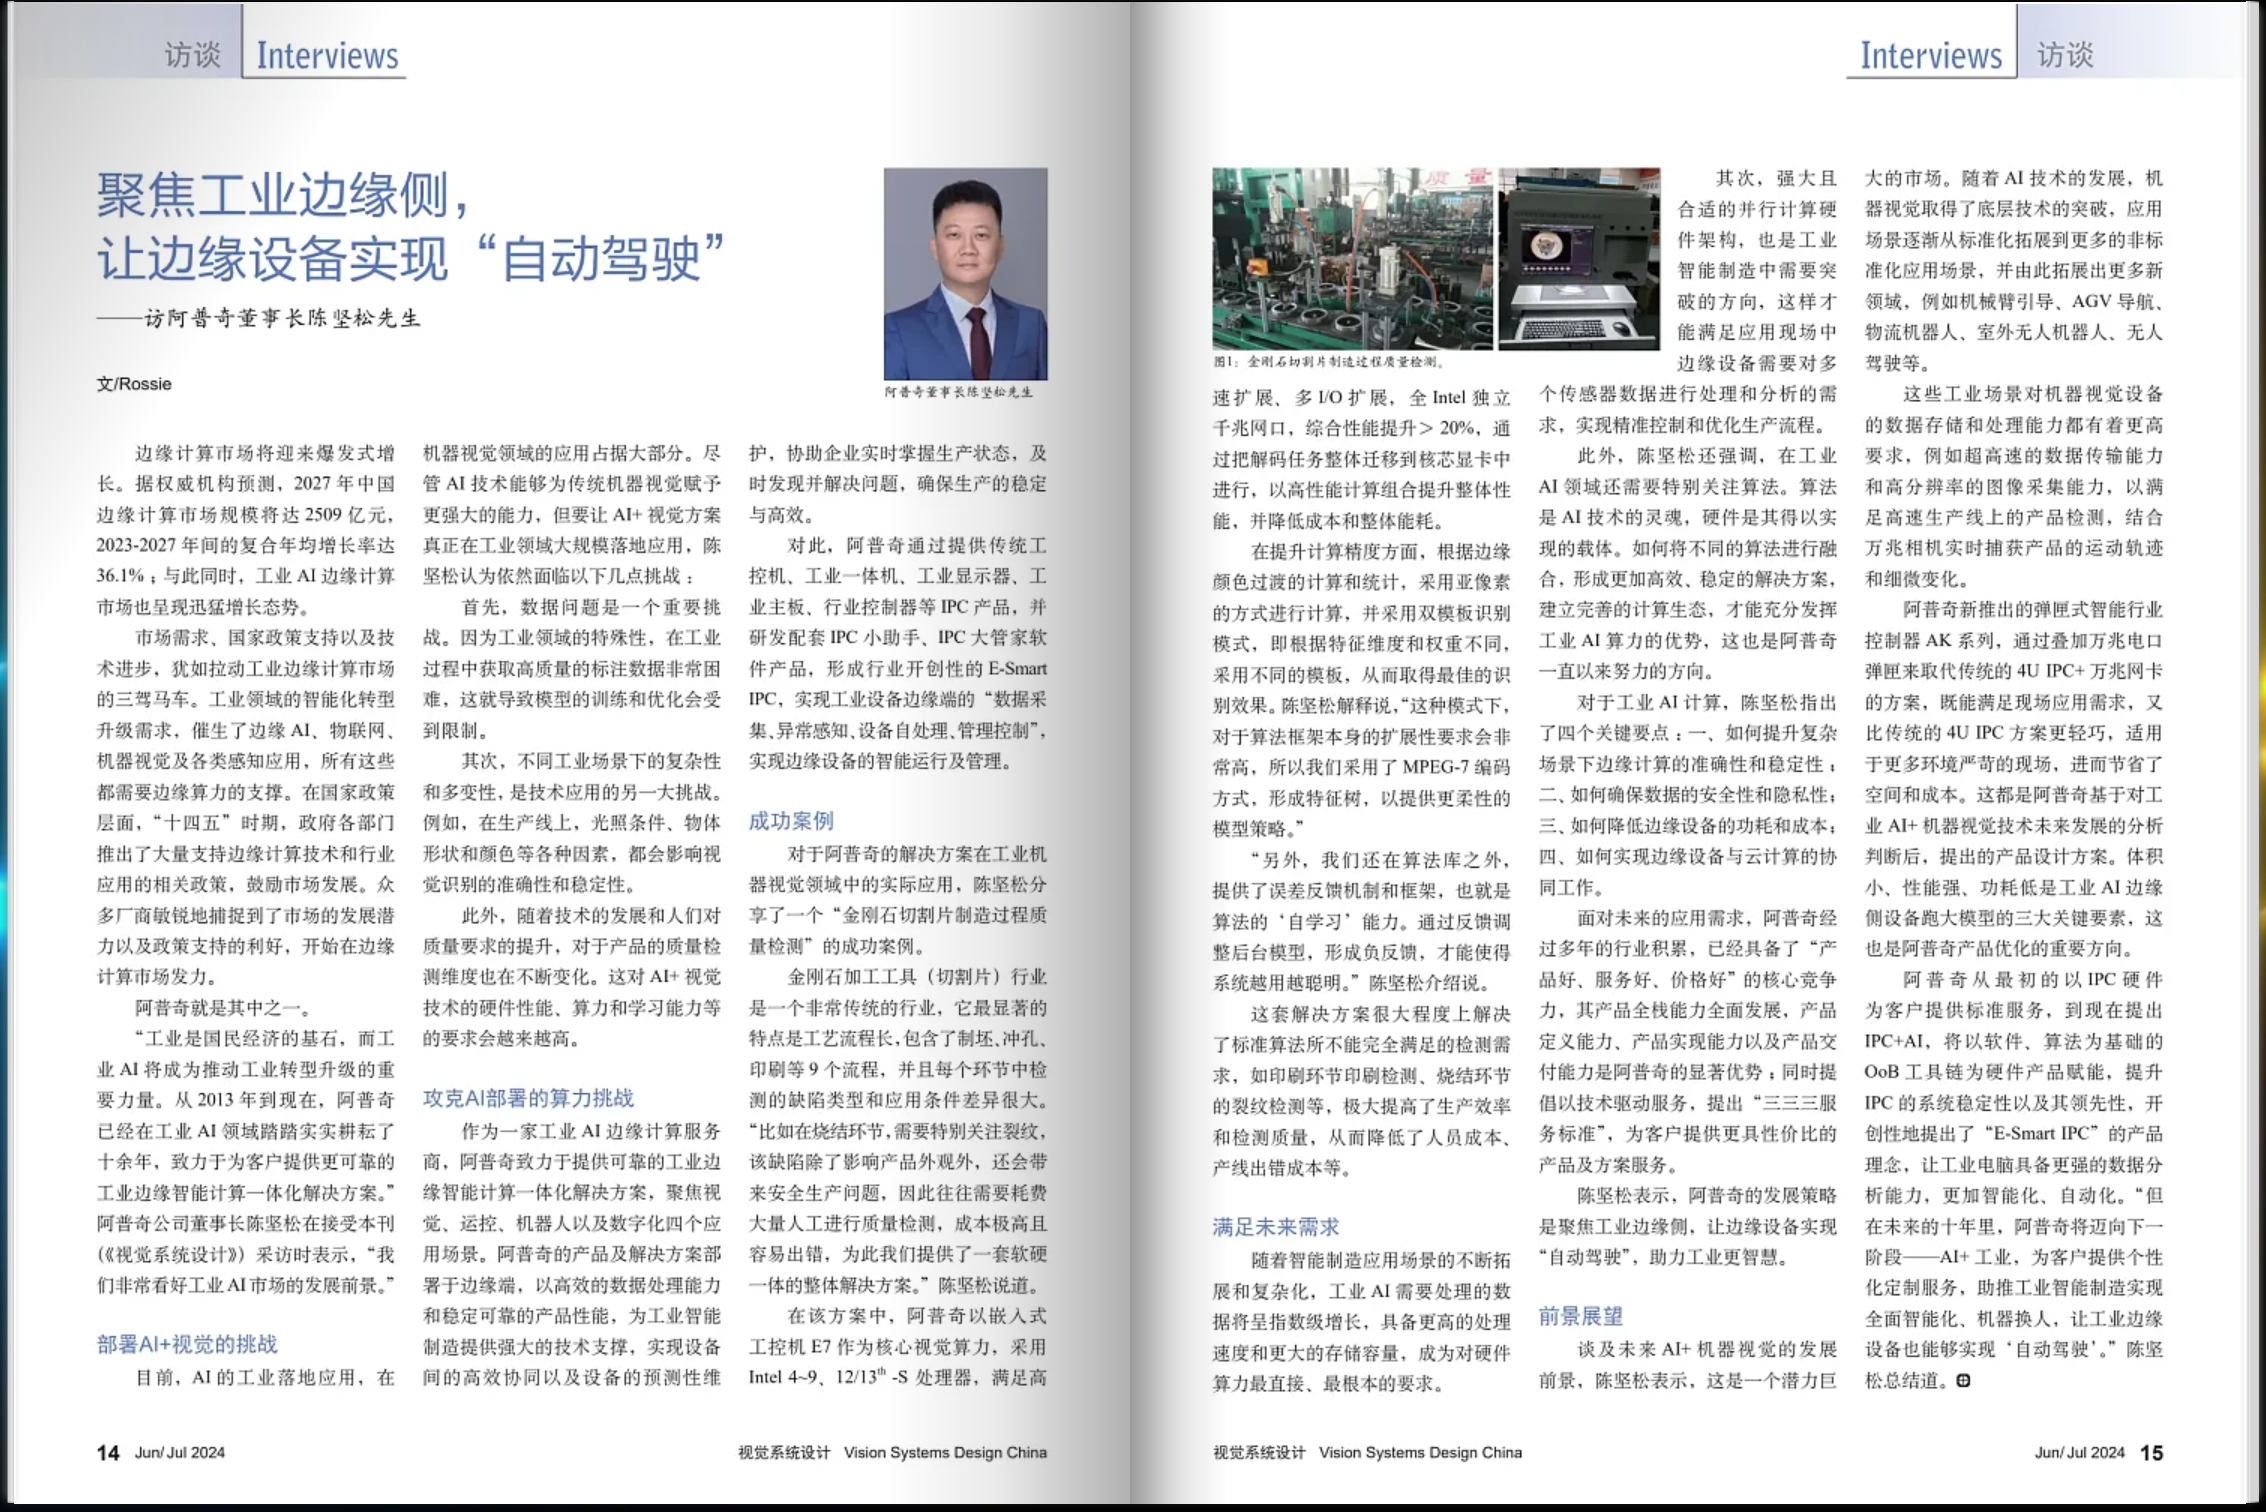 媒体视角 | 阿普奇董事长陈坚松先生接受《视觉系统设计》专访